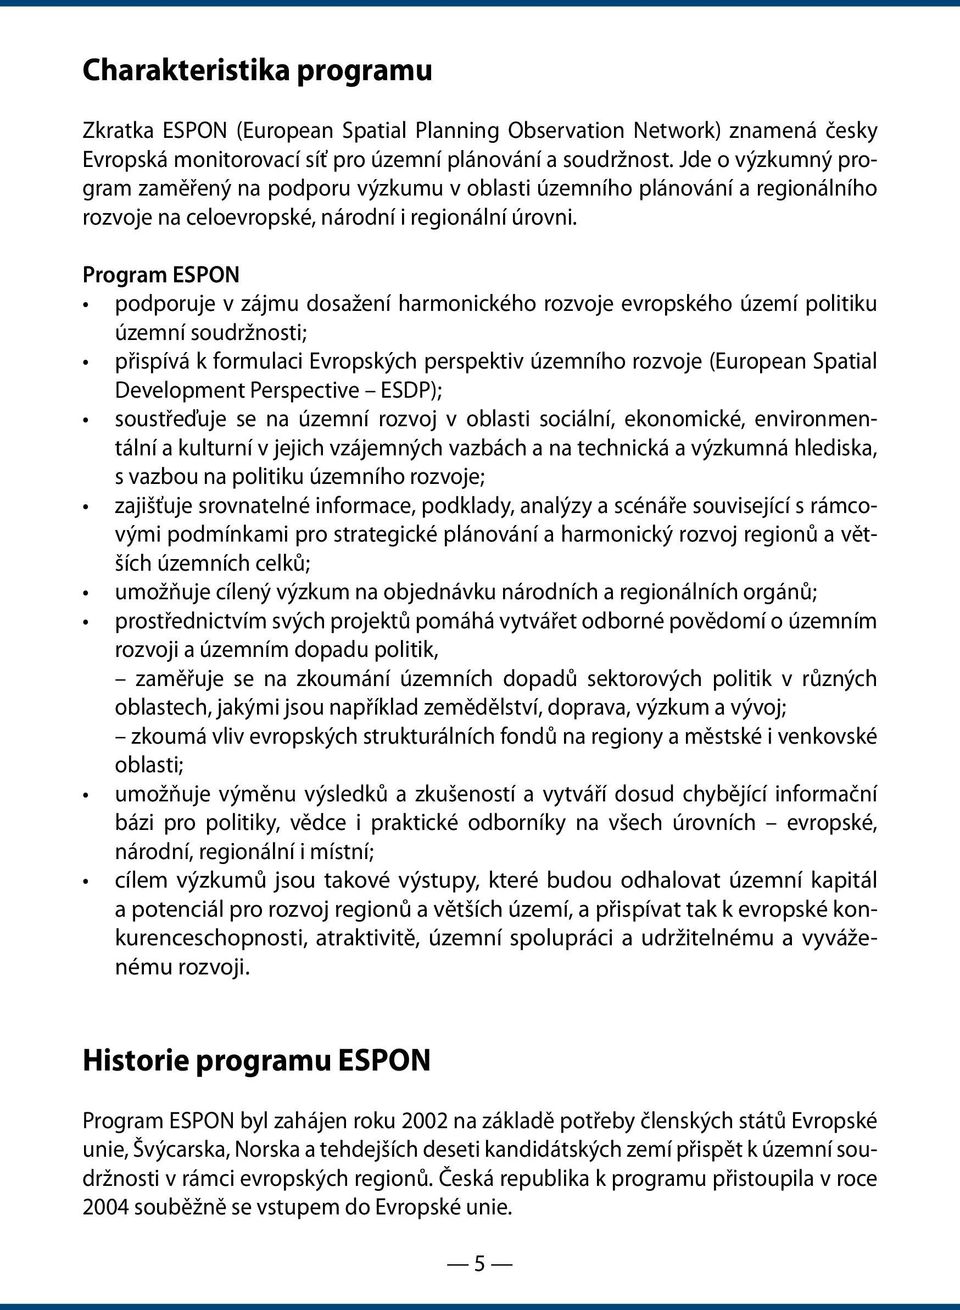 Program ESPON podporuje v zájmu dosažení harmonického rozvoje evropského území politiku územní soudržnosti; přispívá k formulaci Evropských perspektiv územního rozvoje (European Spatial Development